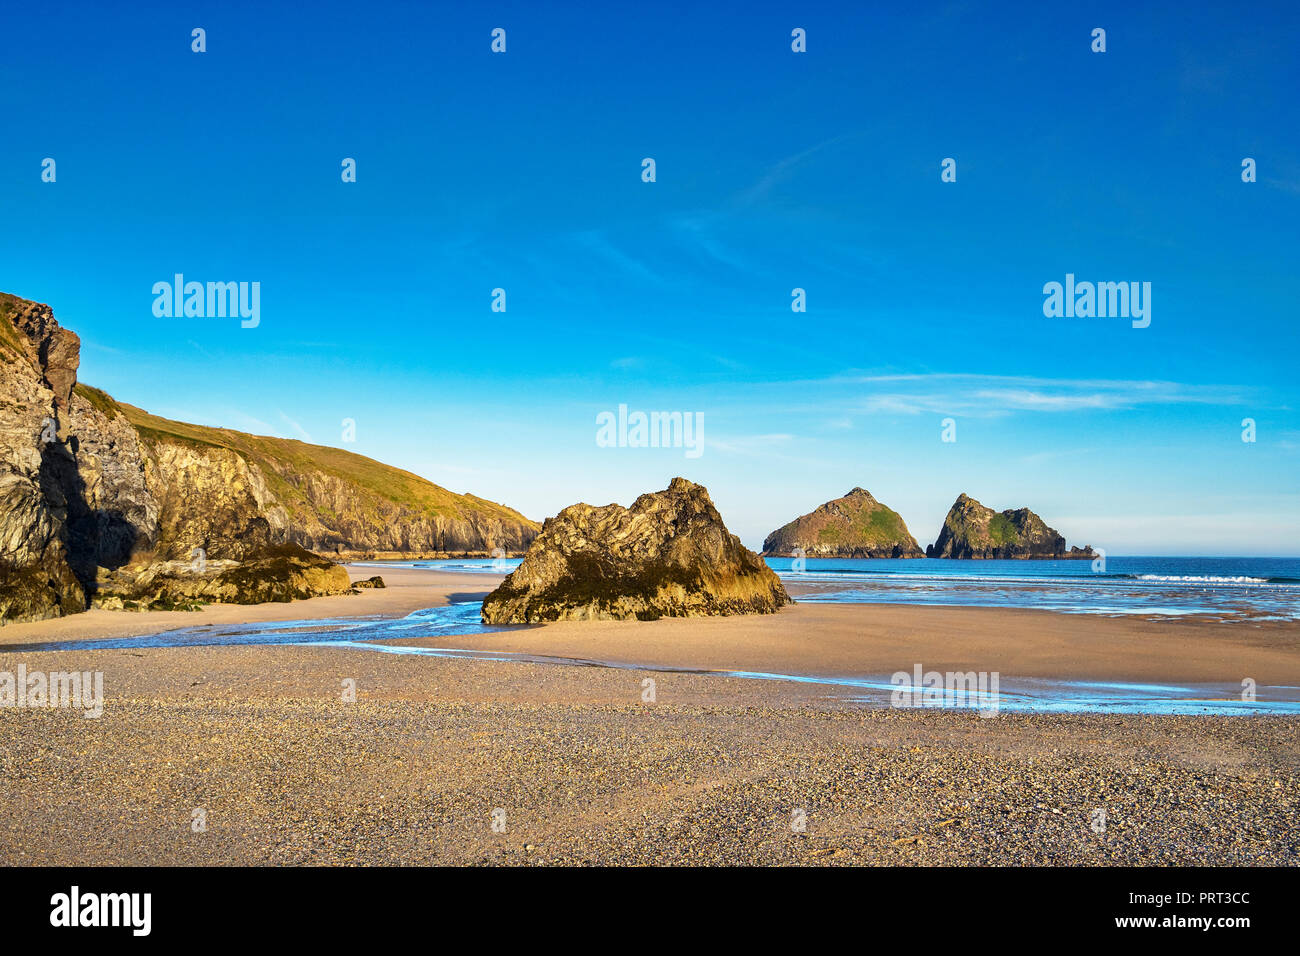 Rochers sur la plage de St Asaph, avec une vue à travers de l'off shore charretiers Rocks, Cornwall, UK Banque D'Images